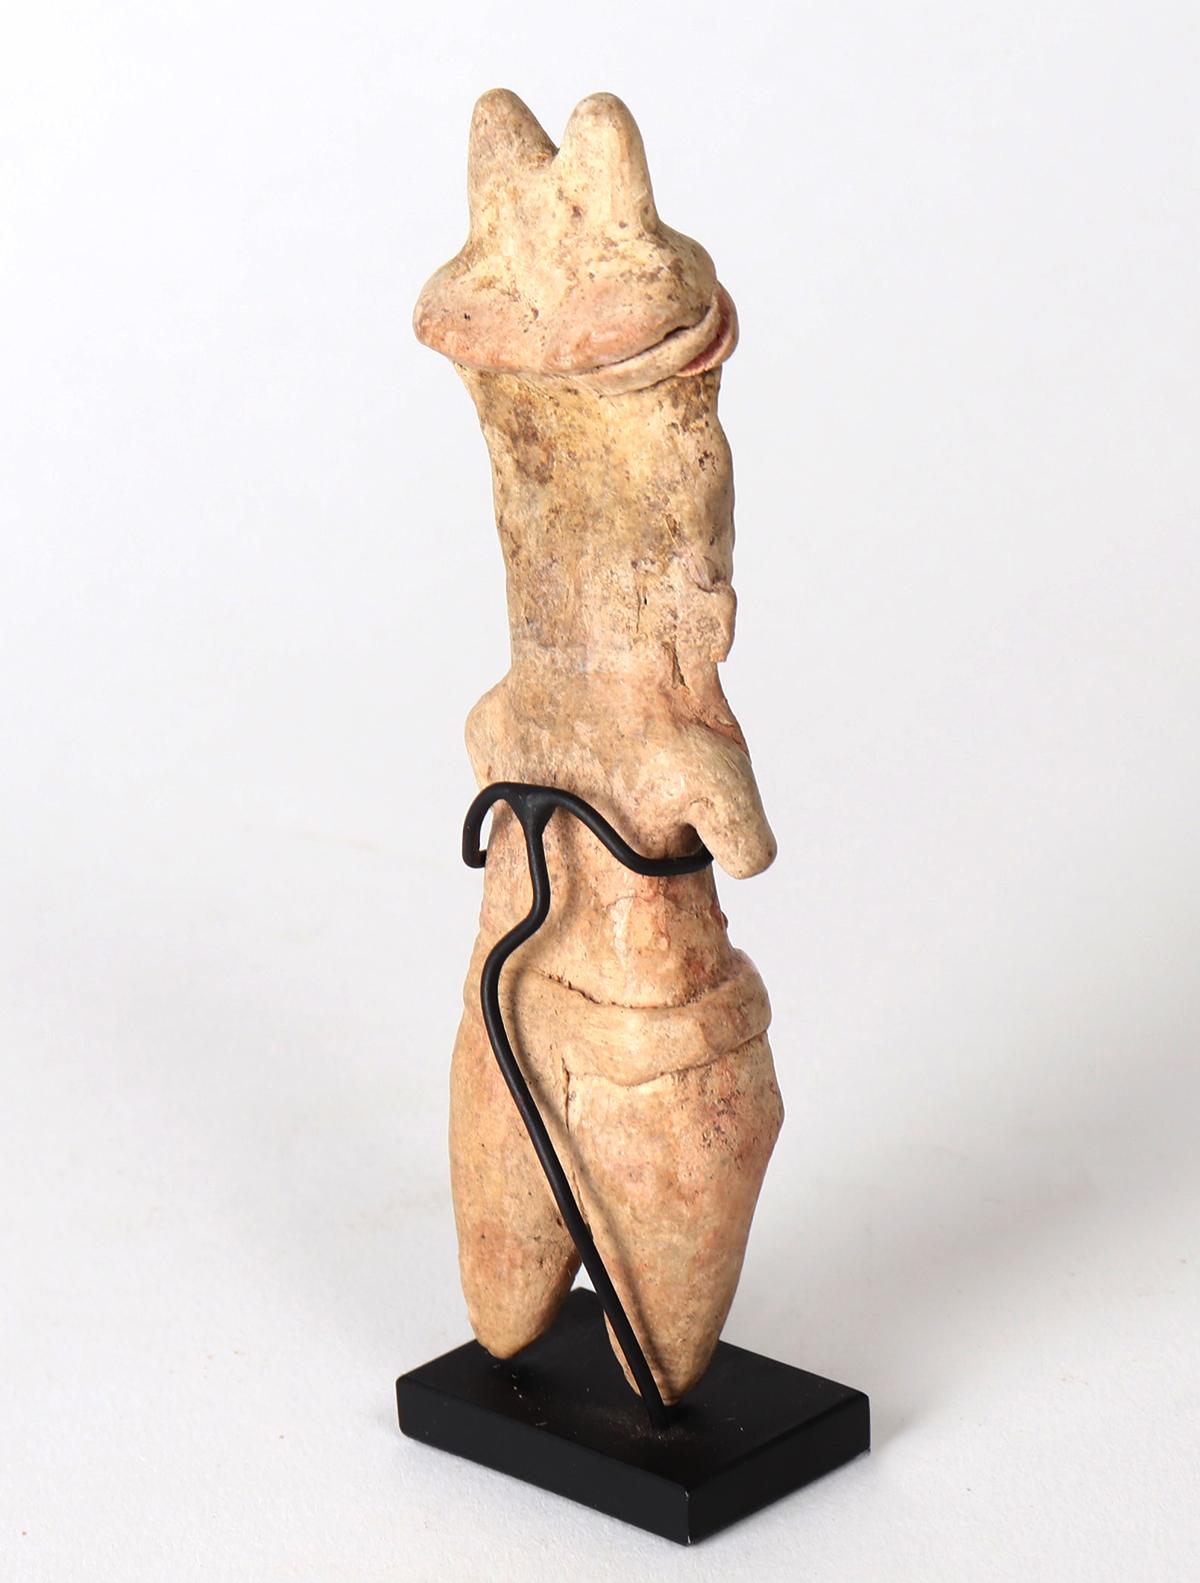 Tlatilco Standing Male Figure, 1150 BCE-550 BCE